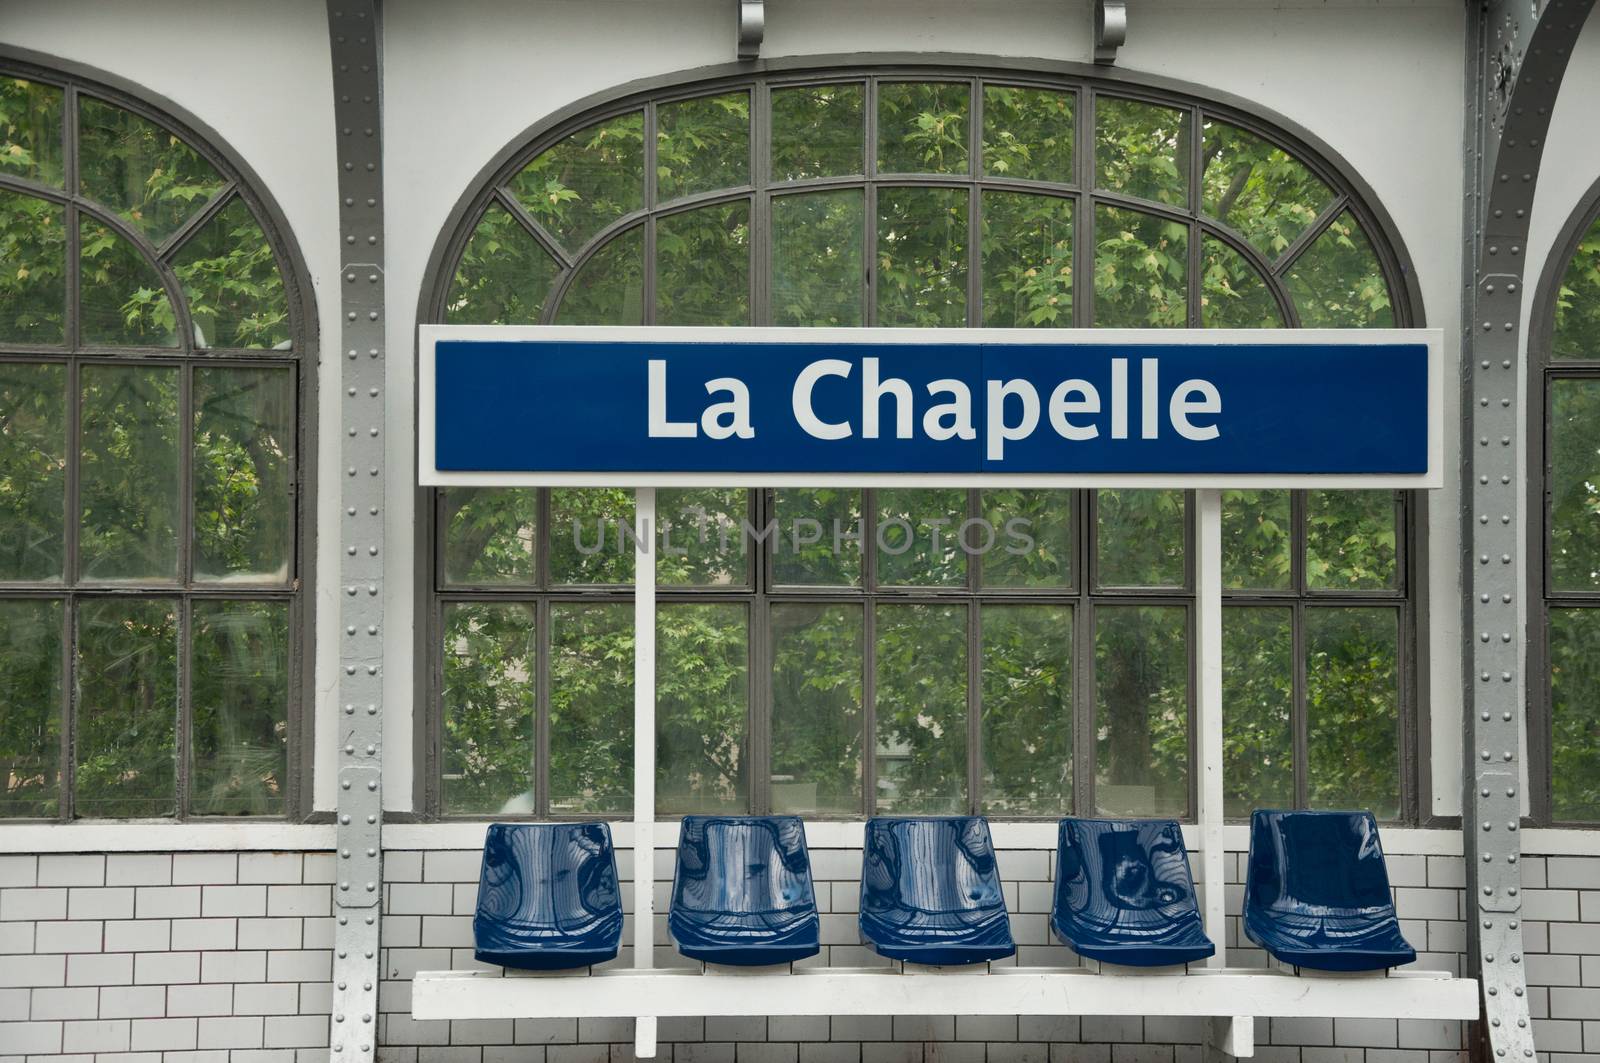 metropolitan station in Paris (La chapelle) by NeydtStock